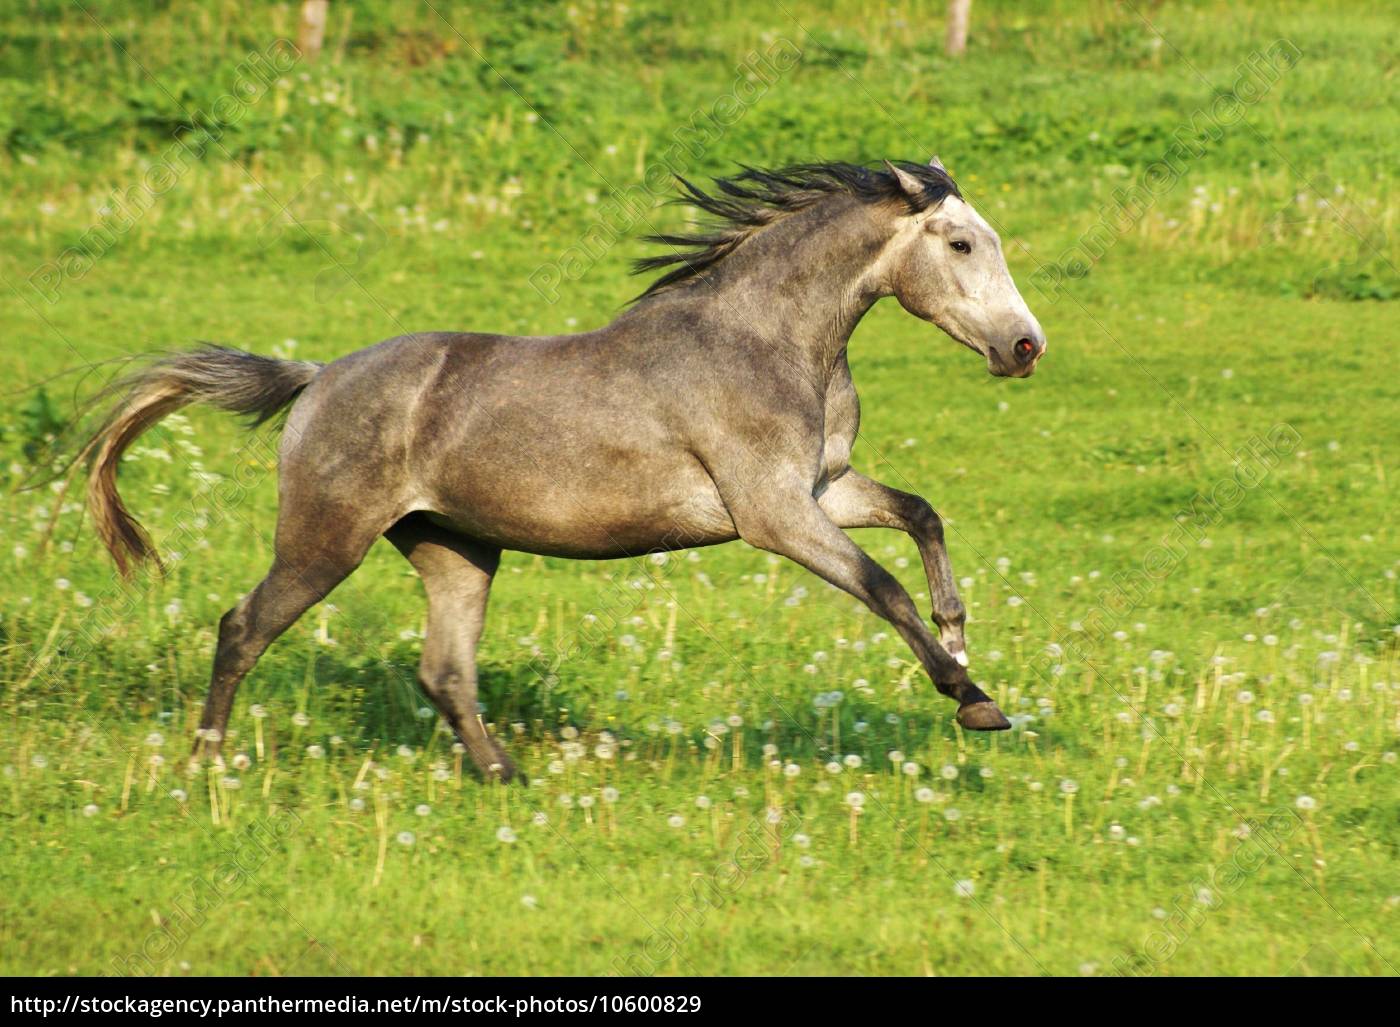 Galoppierendes Pferd - Lizenzfreies Bild - #10600829 - Bildagentur